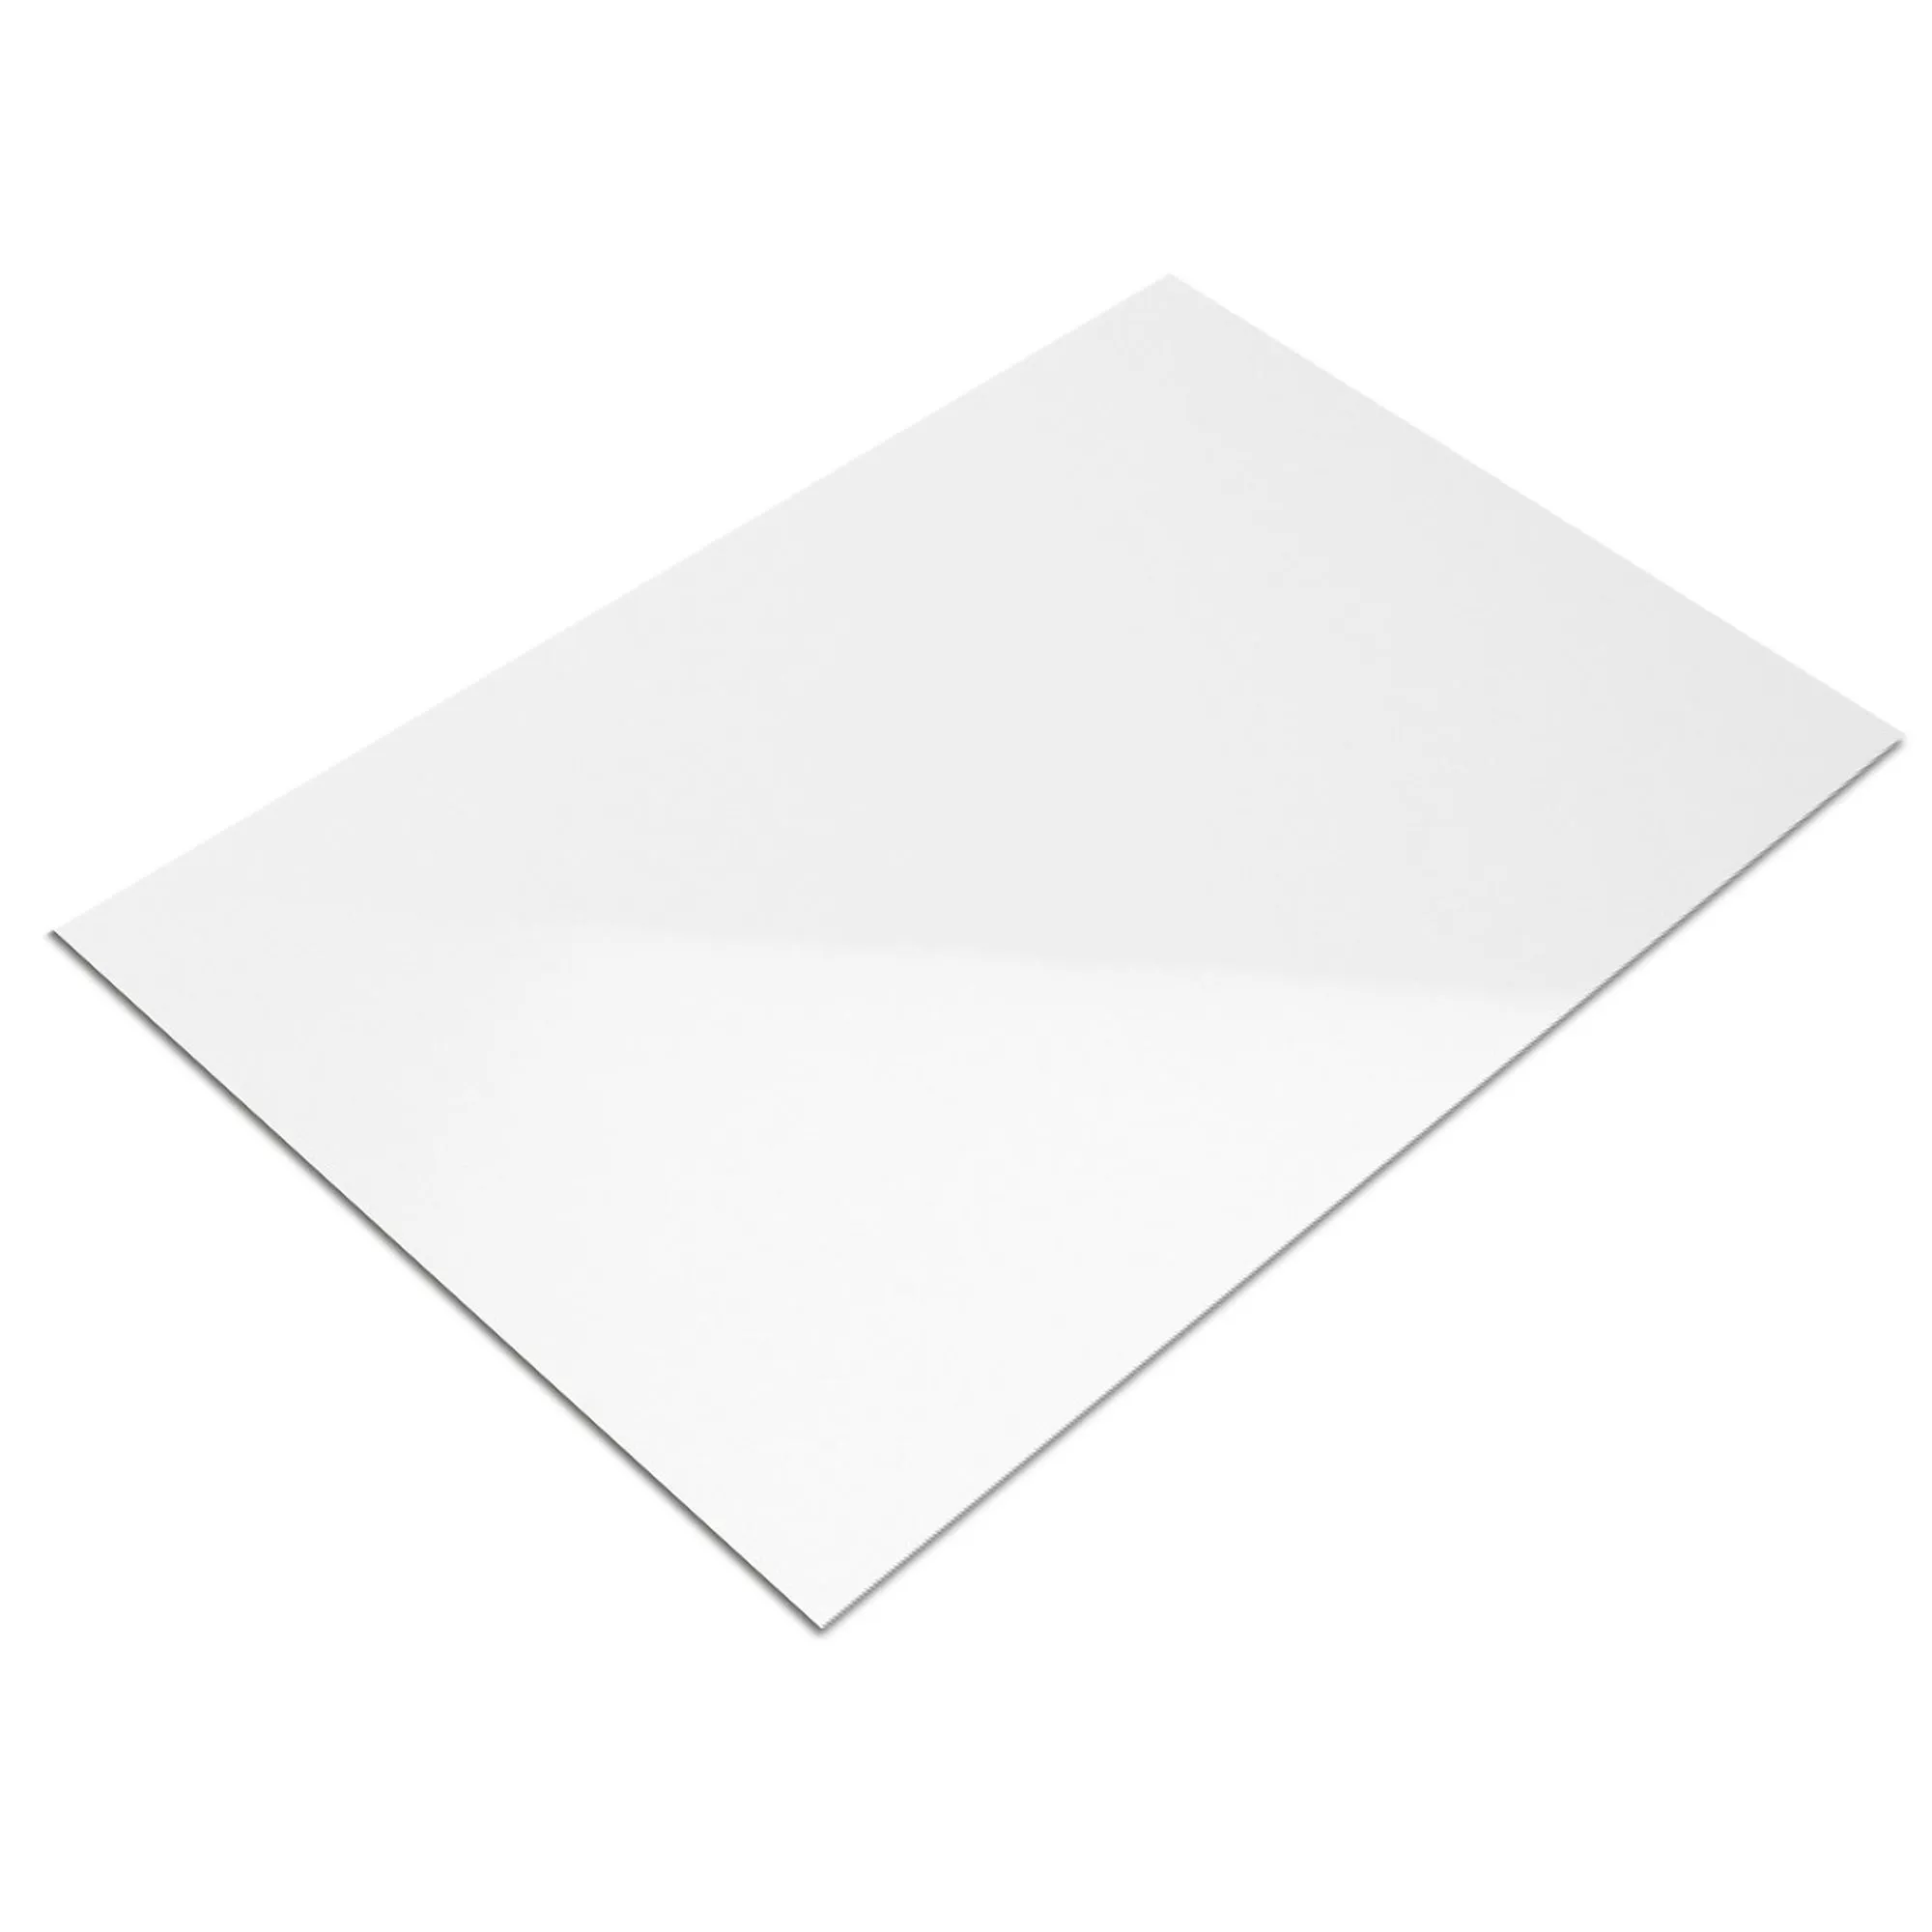 Muestra Revestimiento Fenway Blanco Brillante 30x60cm